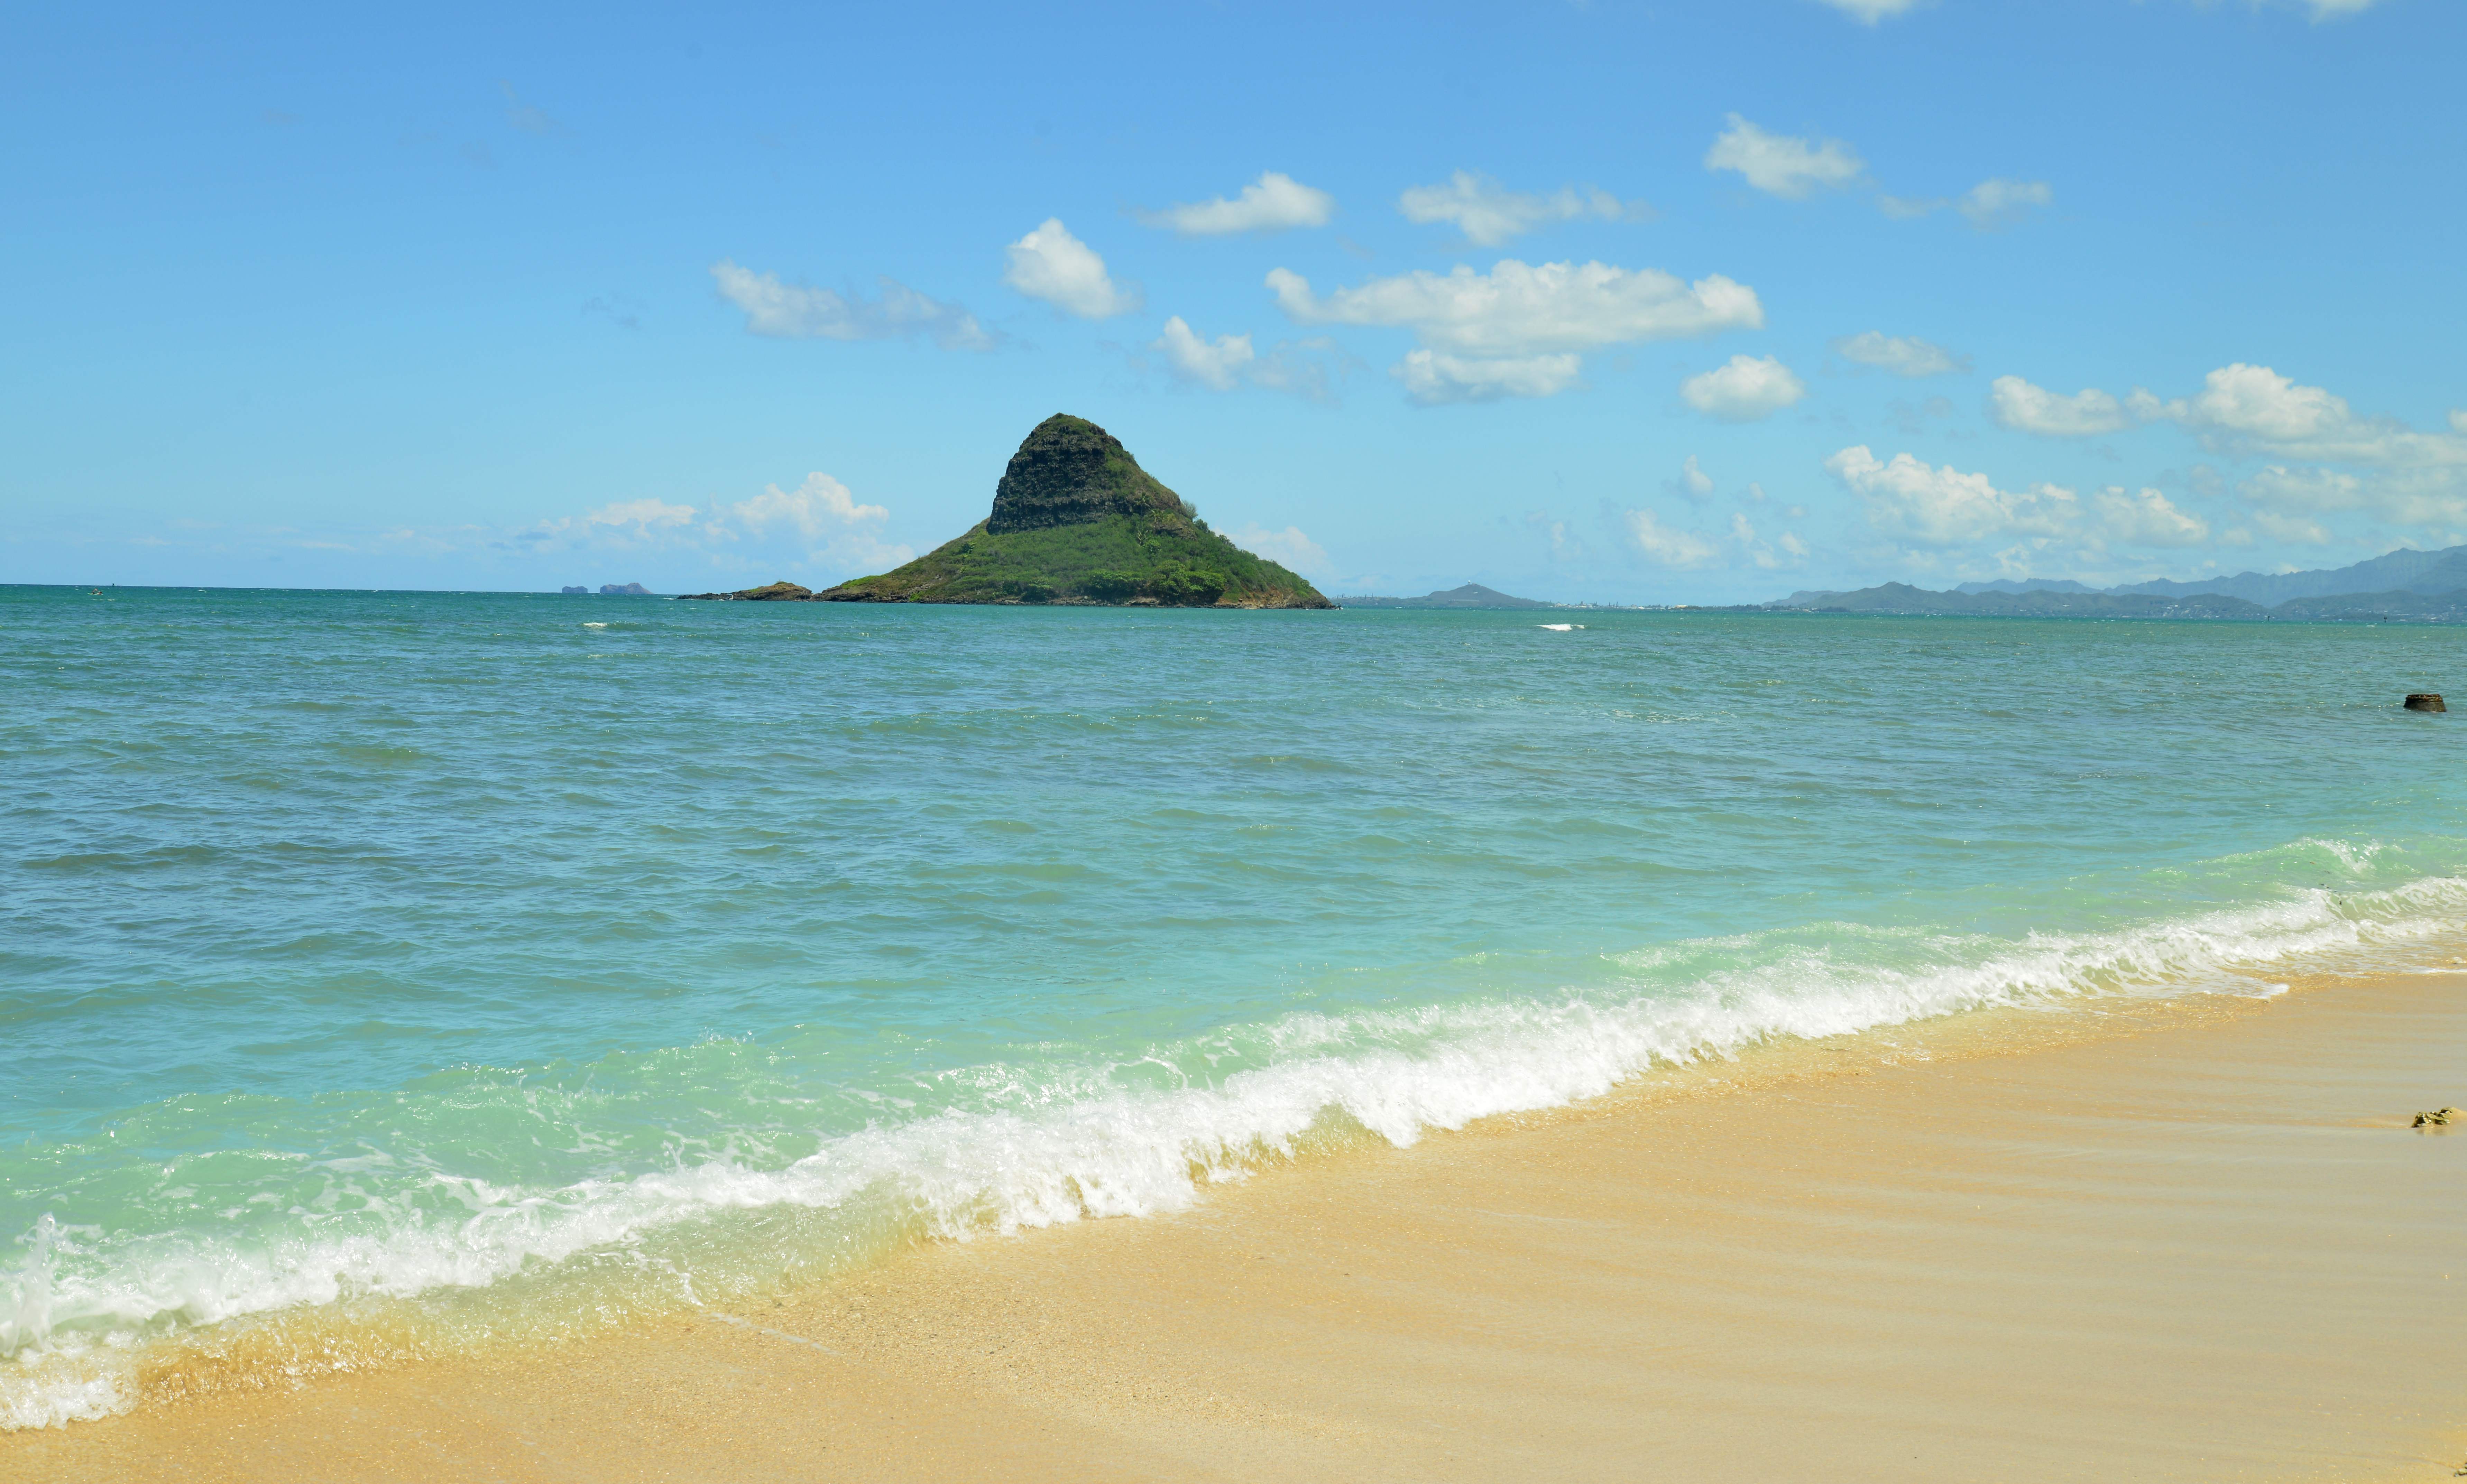 壁纸1920×1080夏威夷的碧海蓝天 Hawaii 夏威夷海滩图片 清澈海水波浪壁纸,夏威夷浪漫海滩壁纸图片-风景壁纸-风景图片素材-桌面壁纸